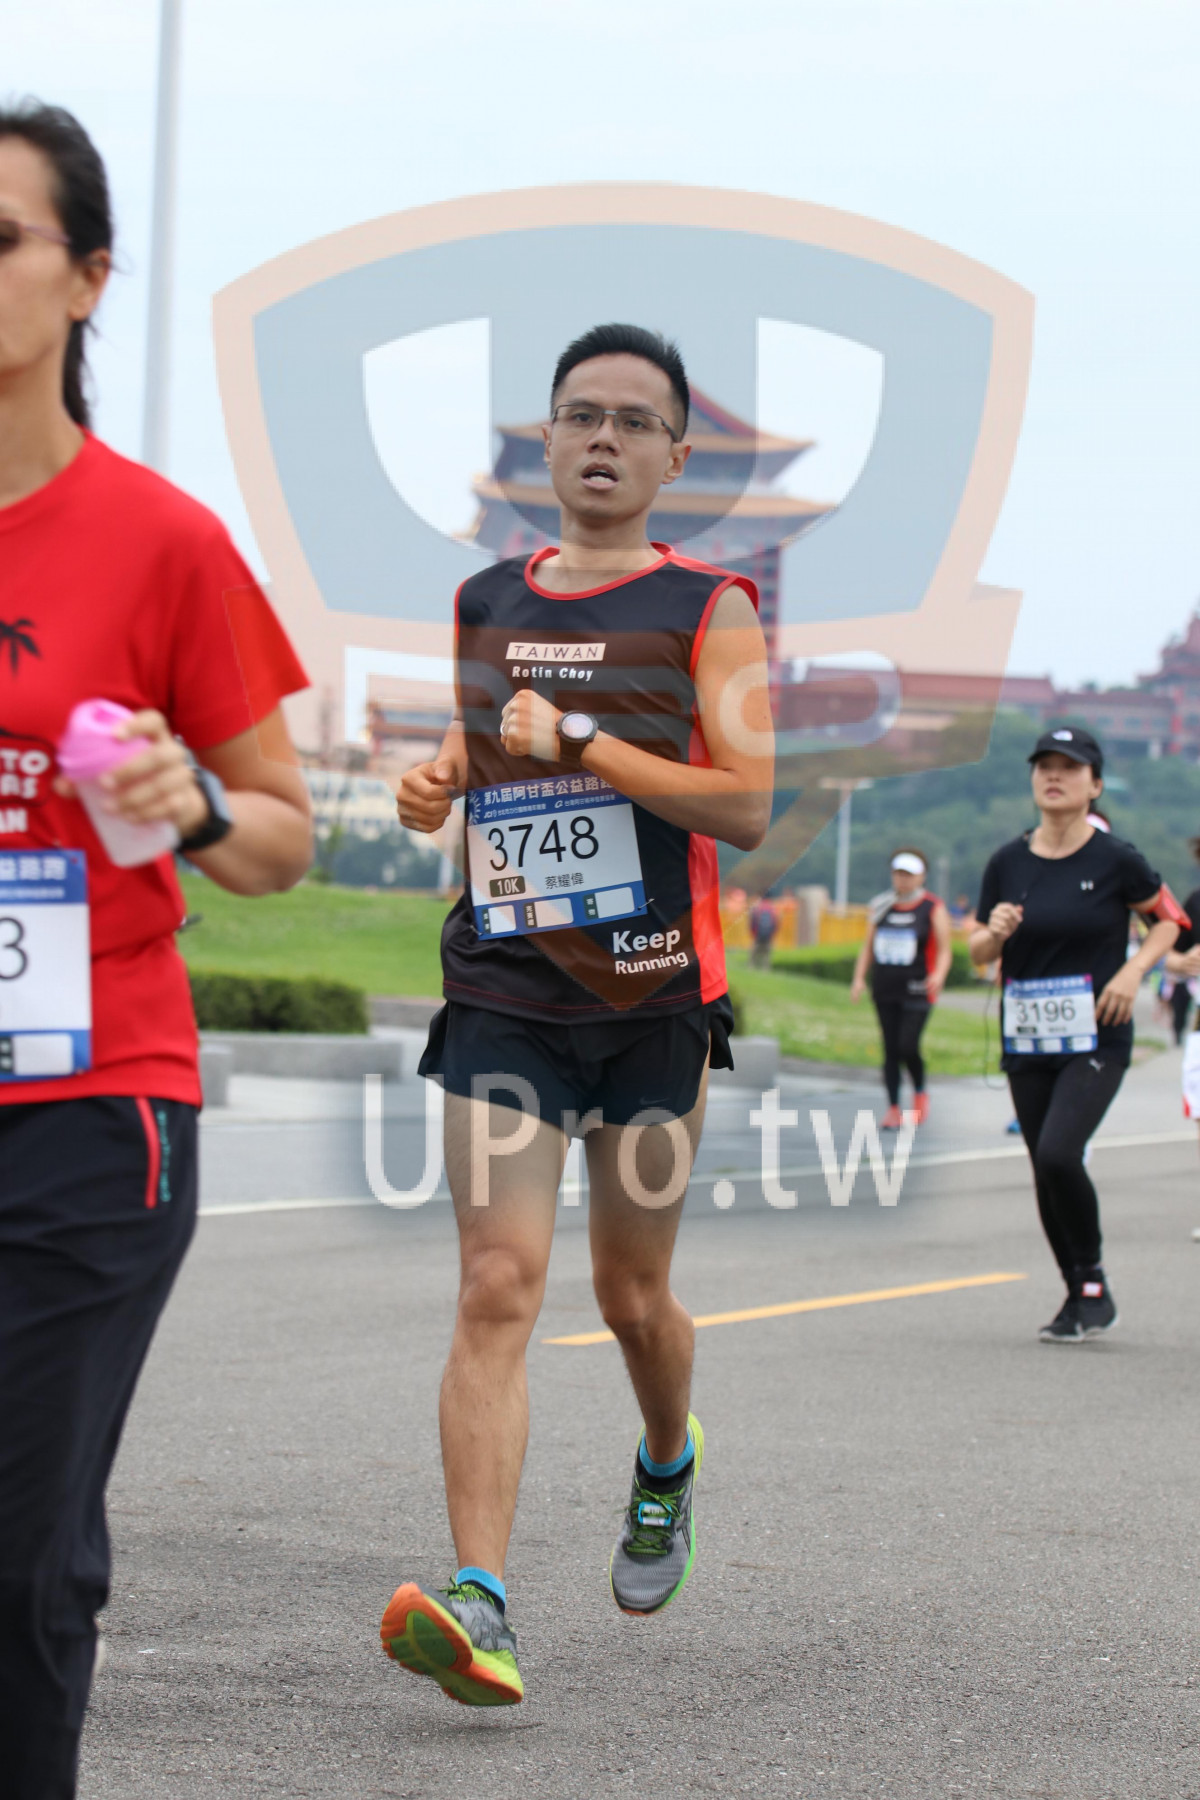 TAIWAN,Retin Choy,įt,3748,10K,,Keep,Running,3196|2018 第九屆阿甘盃公益路跑|Soryu Asuka Langley